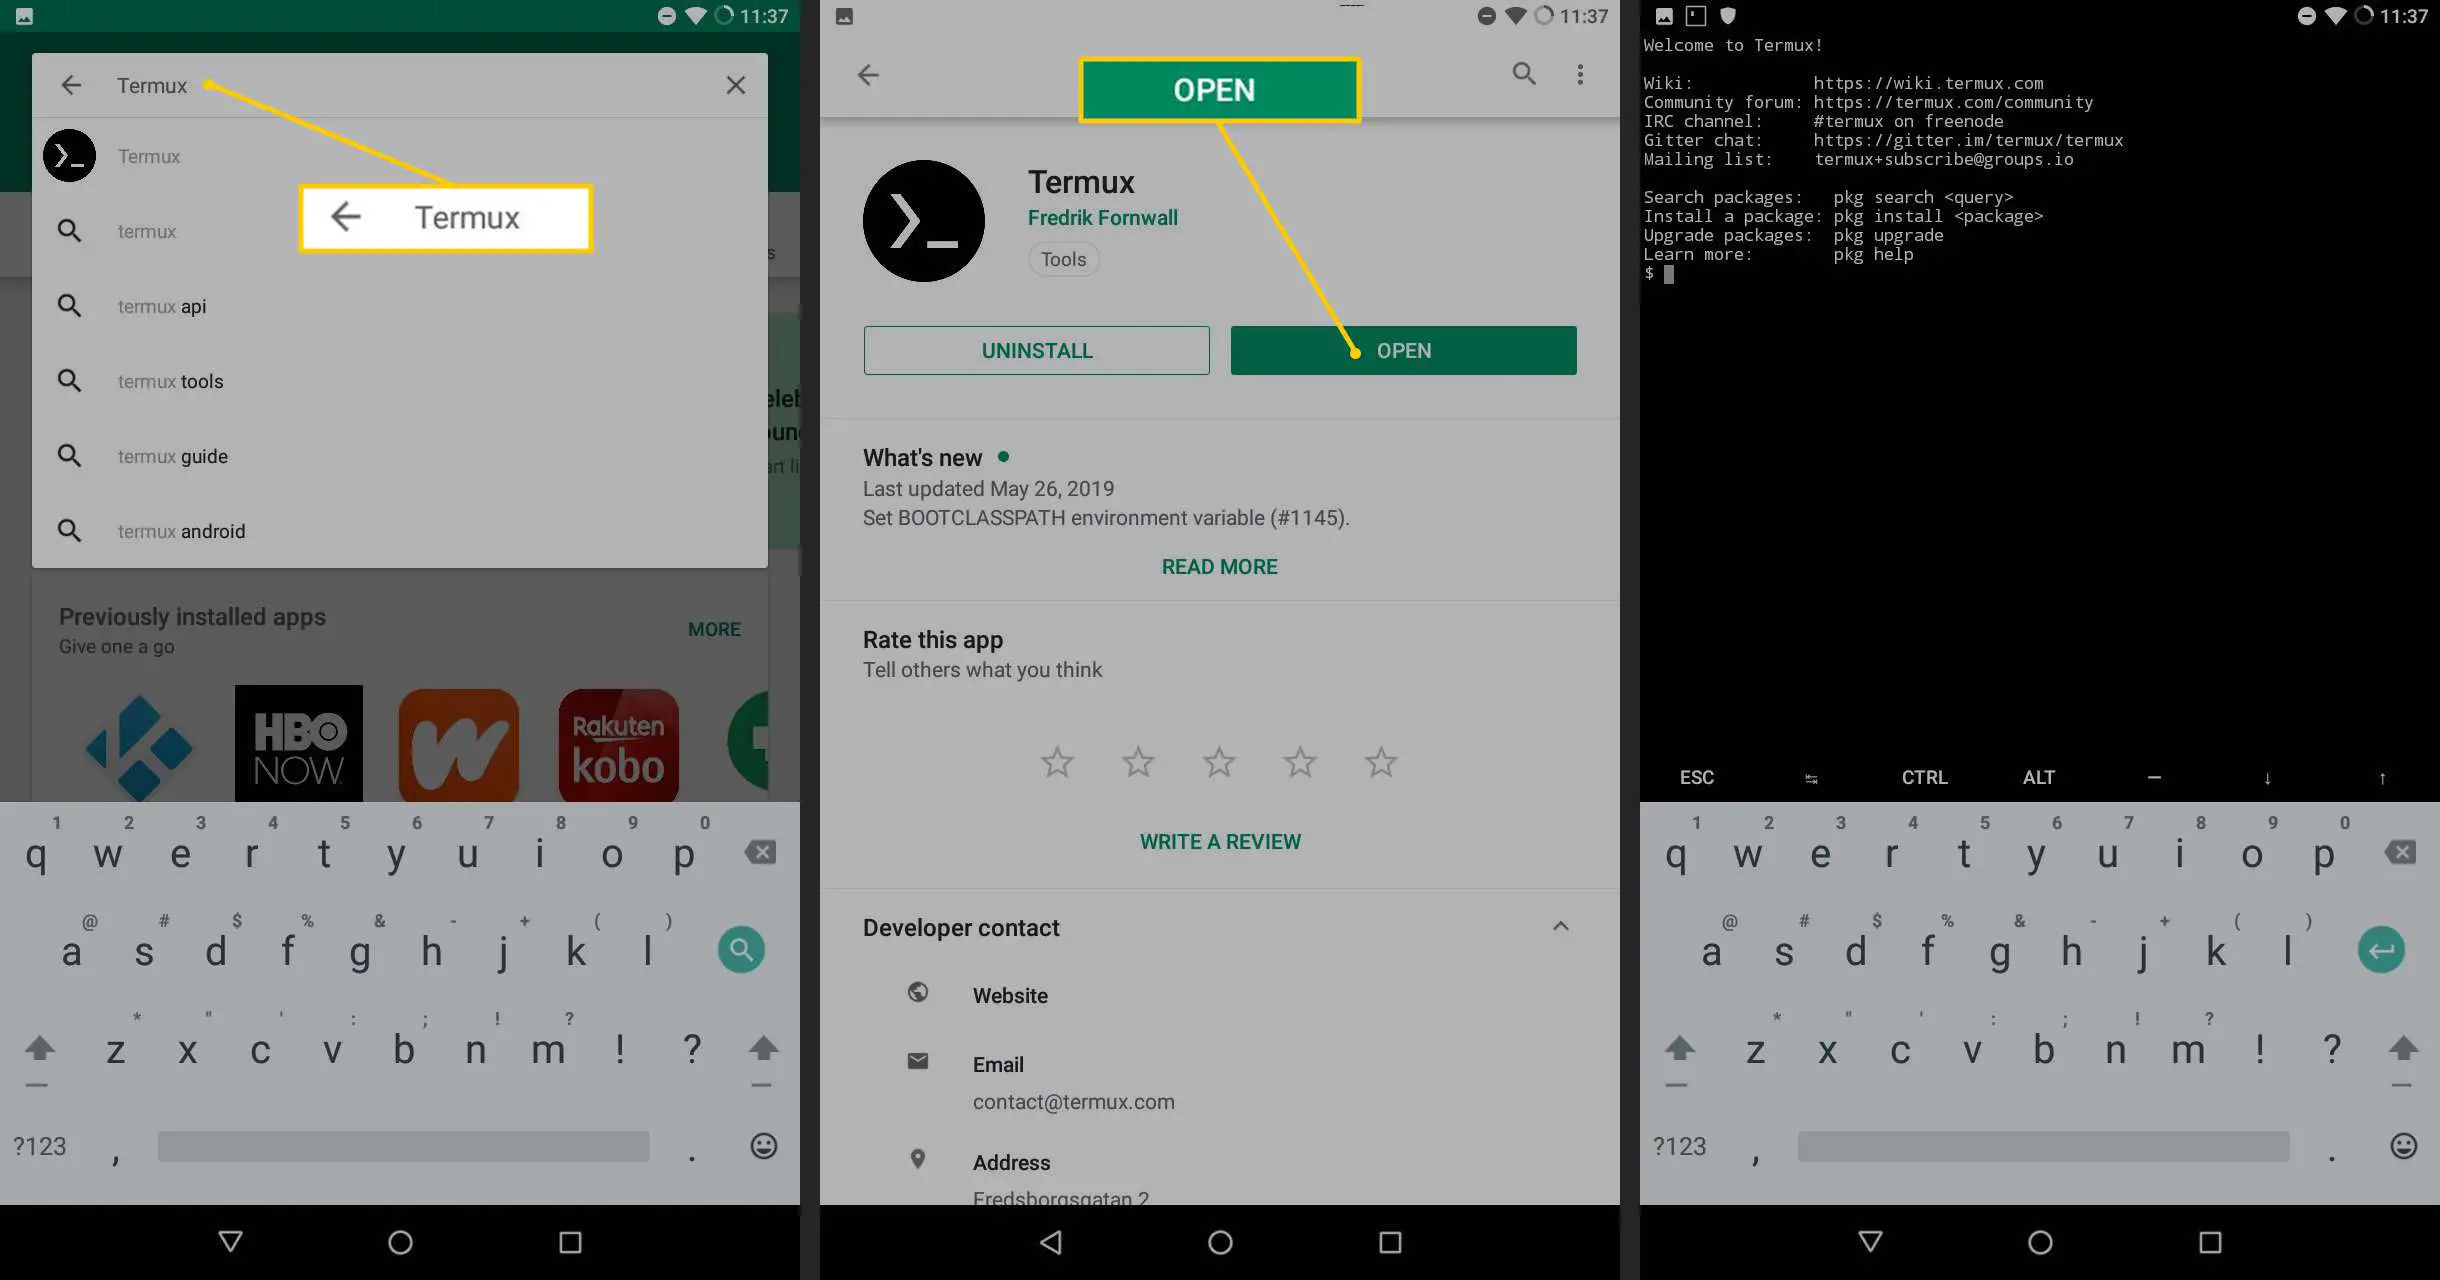 Campo de pesquisa Termux, botão Abrir, aplicativo Termux em execução no Android